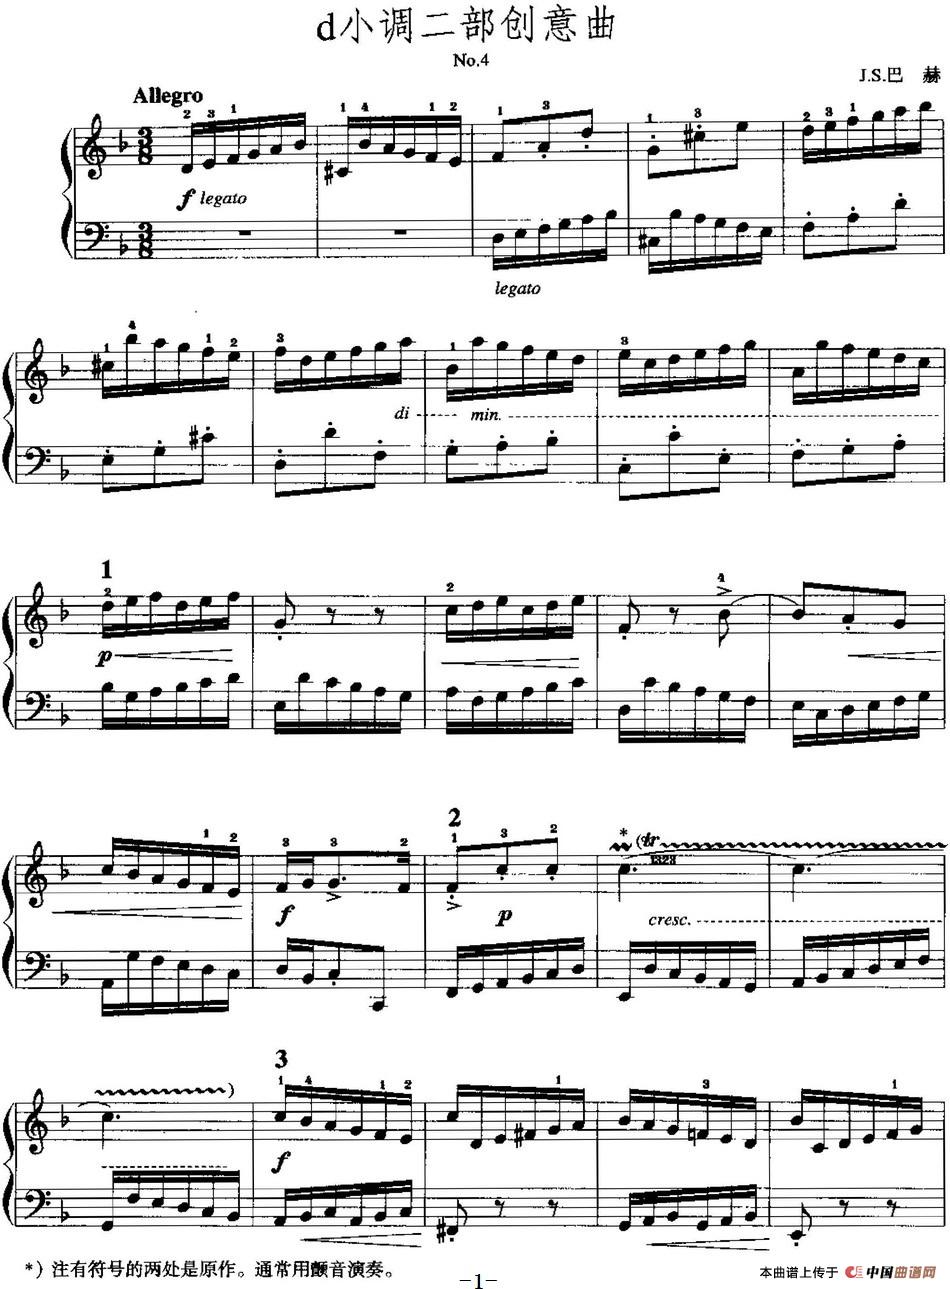 手风琴复调作品：d小调二部创意曲手风琴谱（线简谱对照、带指法版）